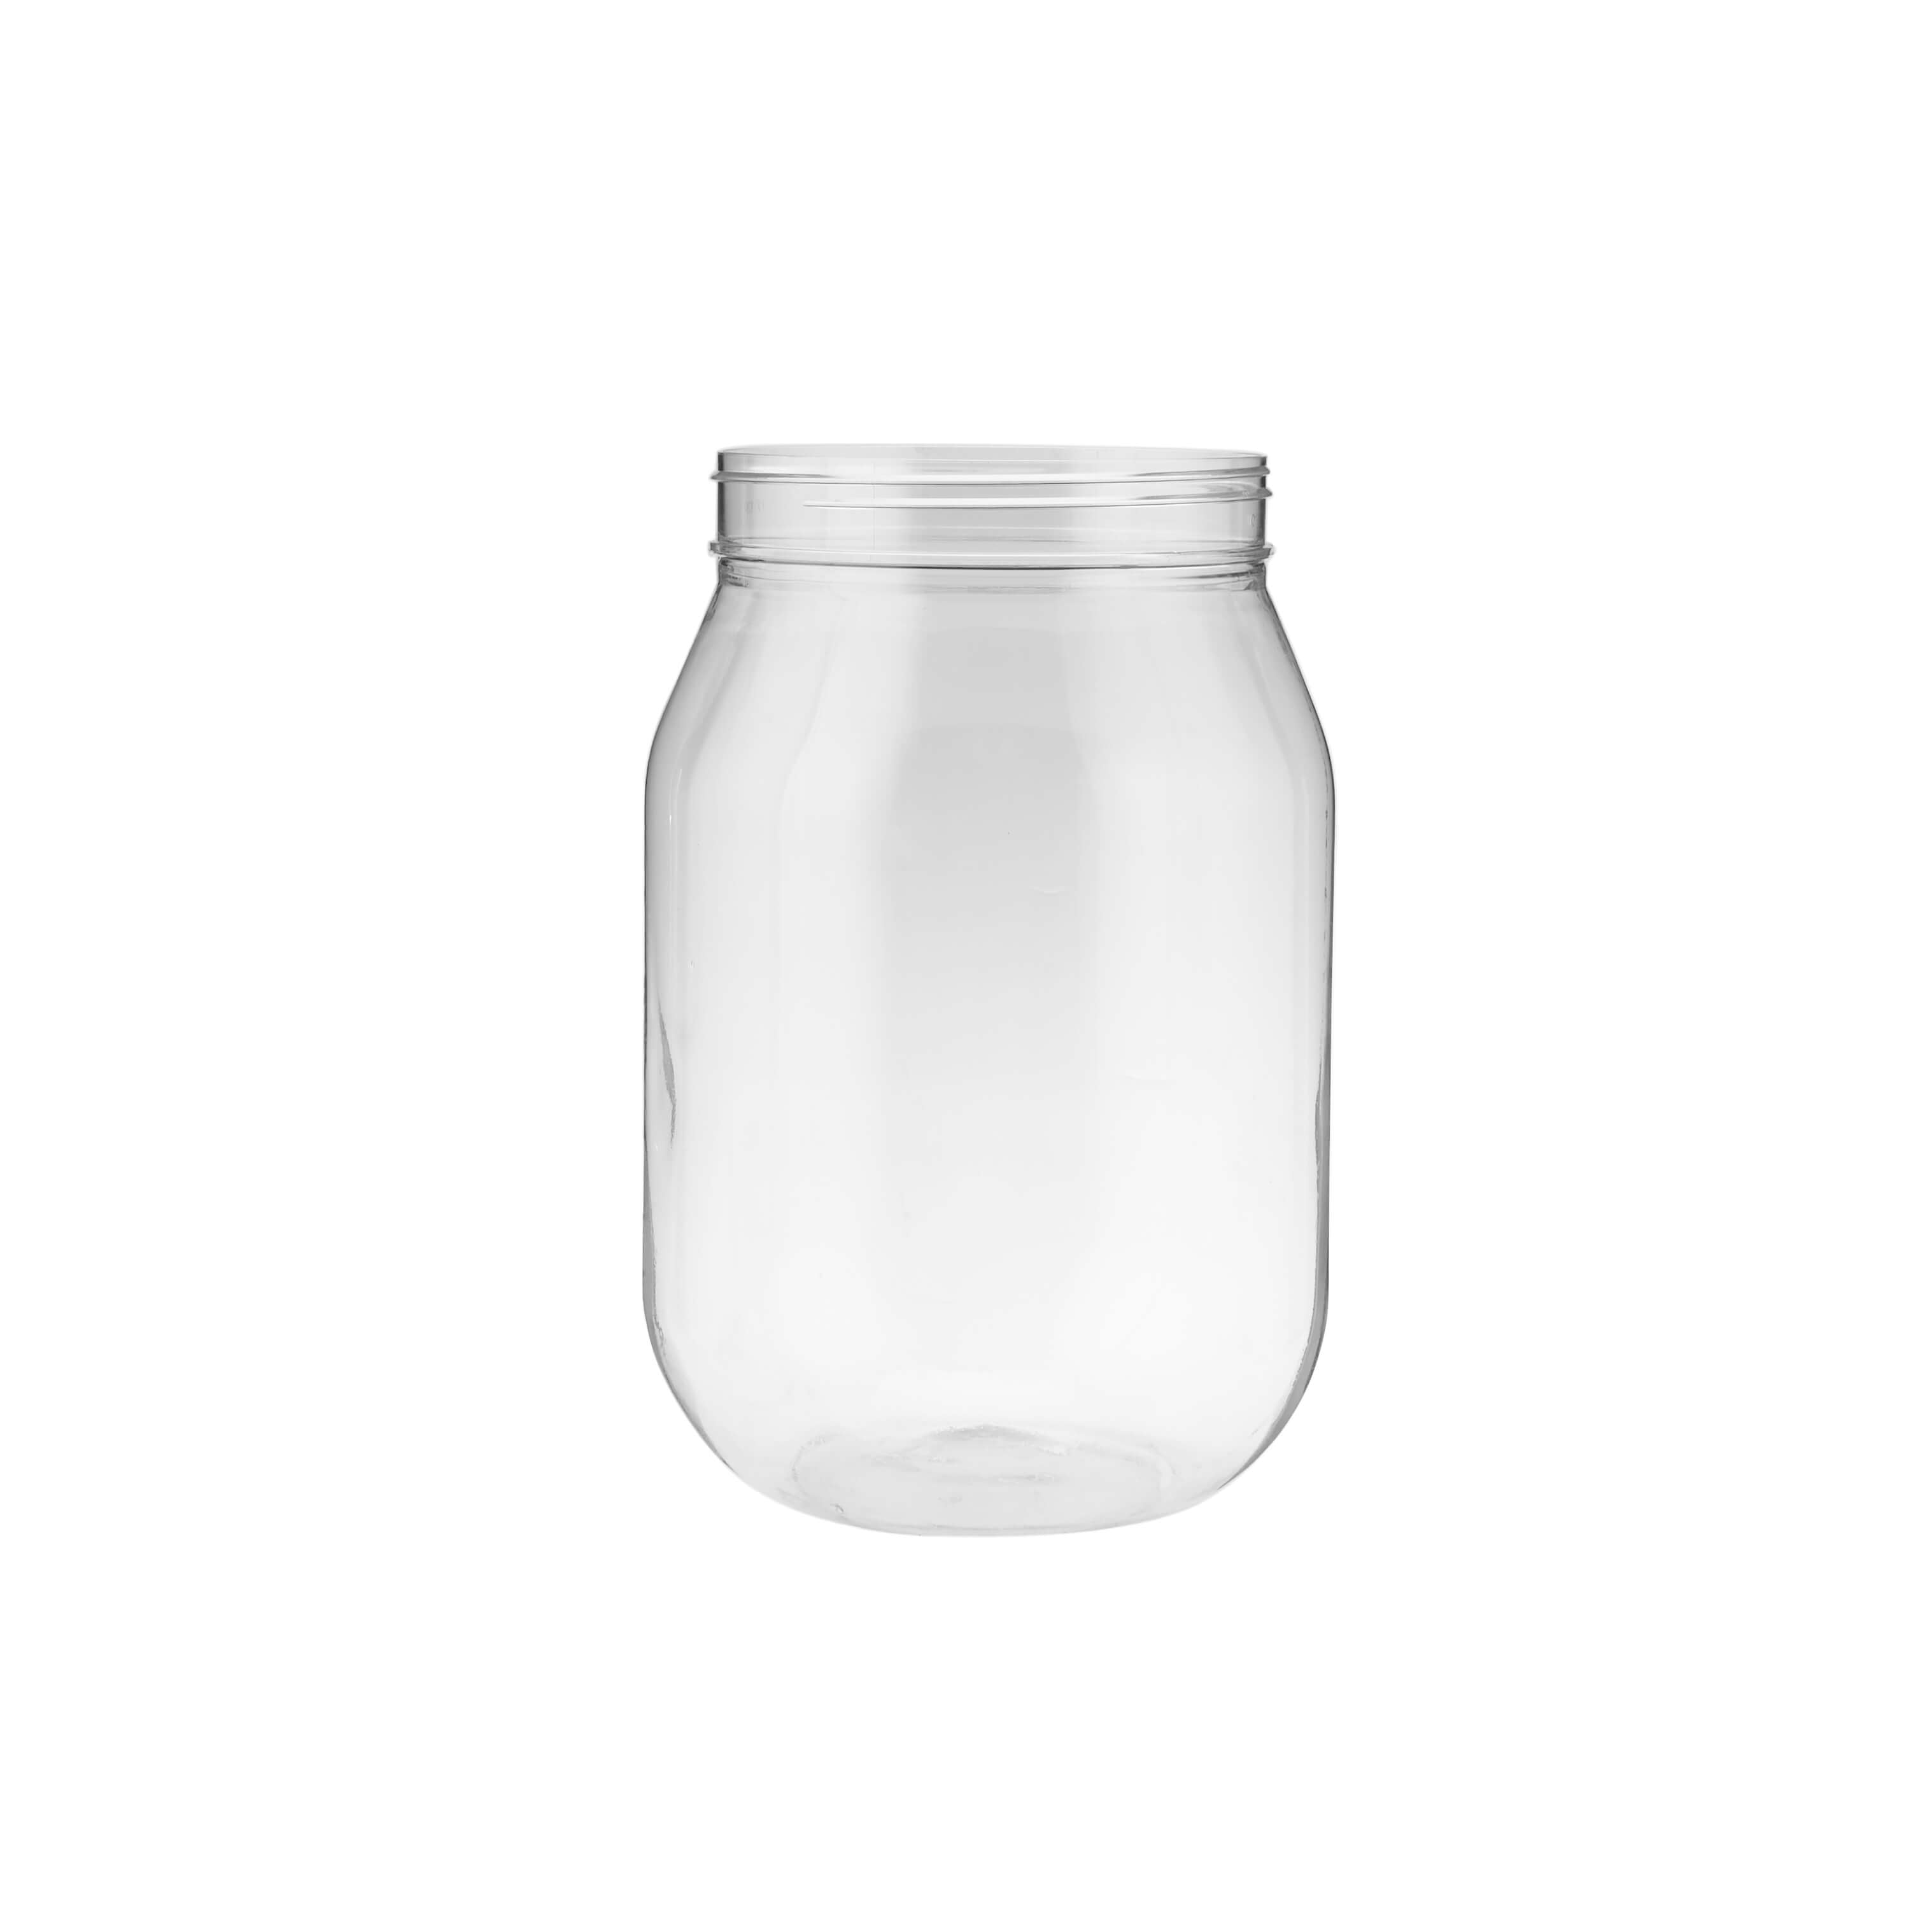 3000 ml Plastic Storage Jar With Lid - Hotpack Global